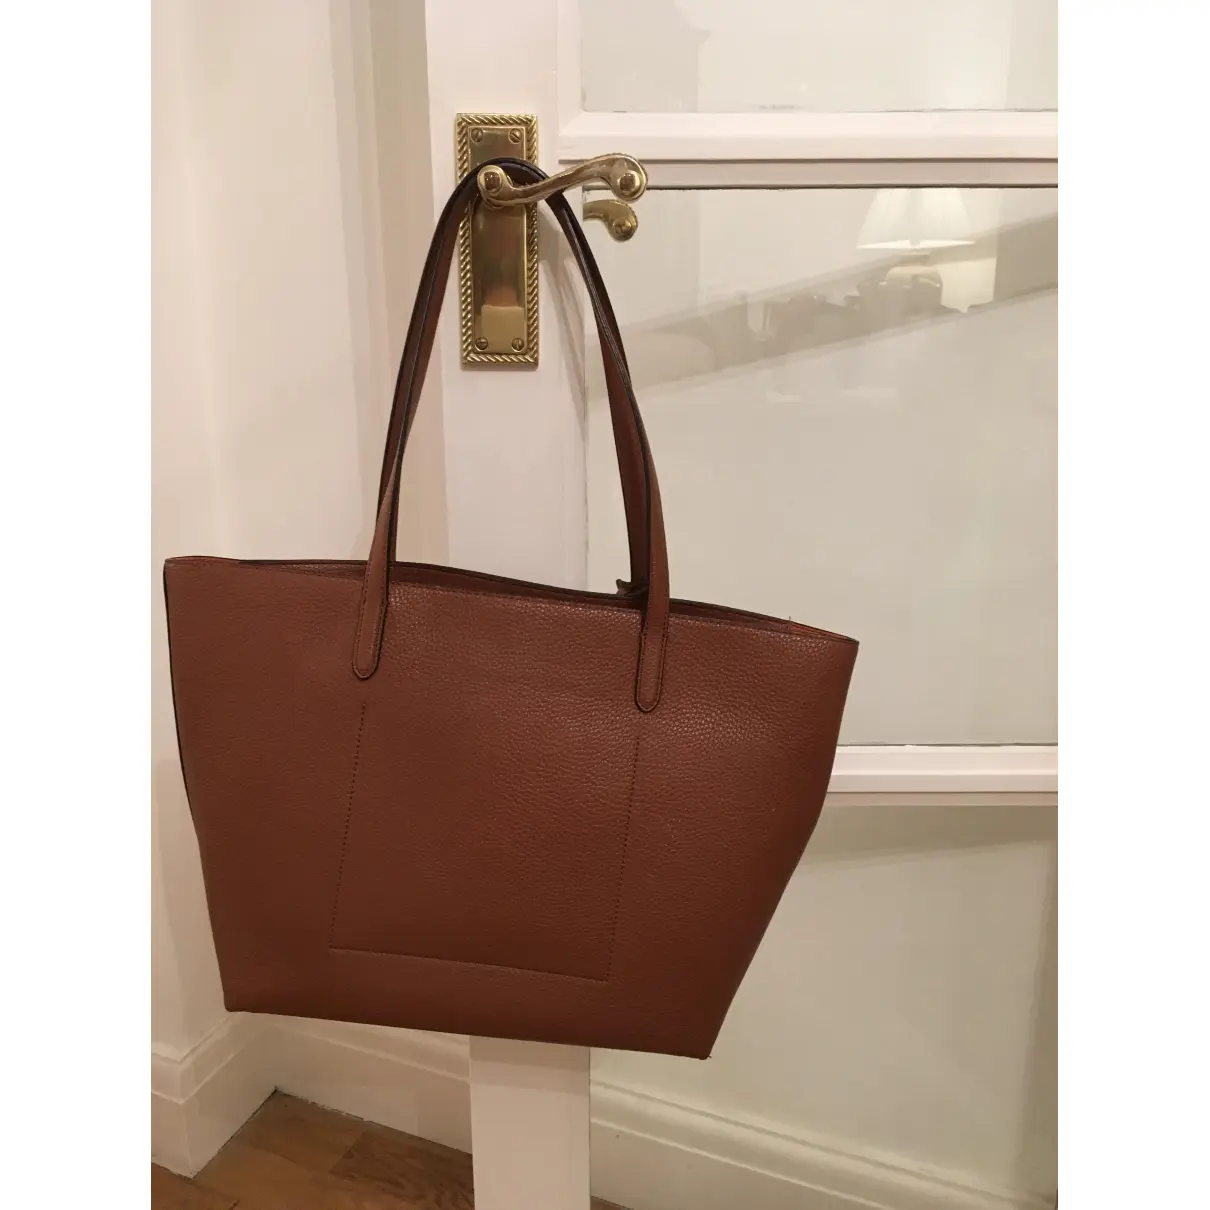 Buy Lauren Ralph Lauren Handbag online